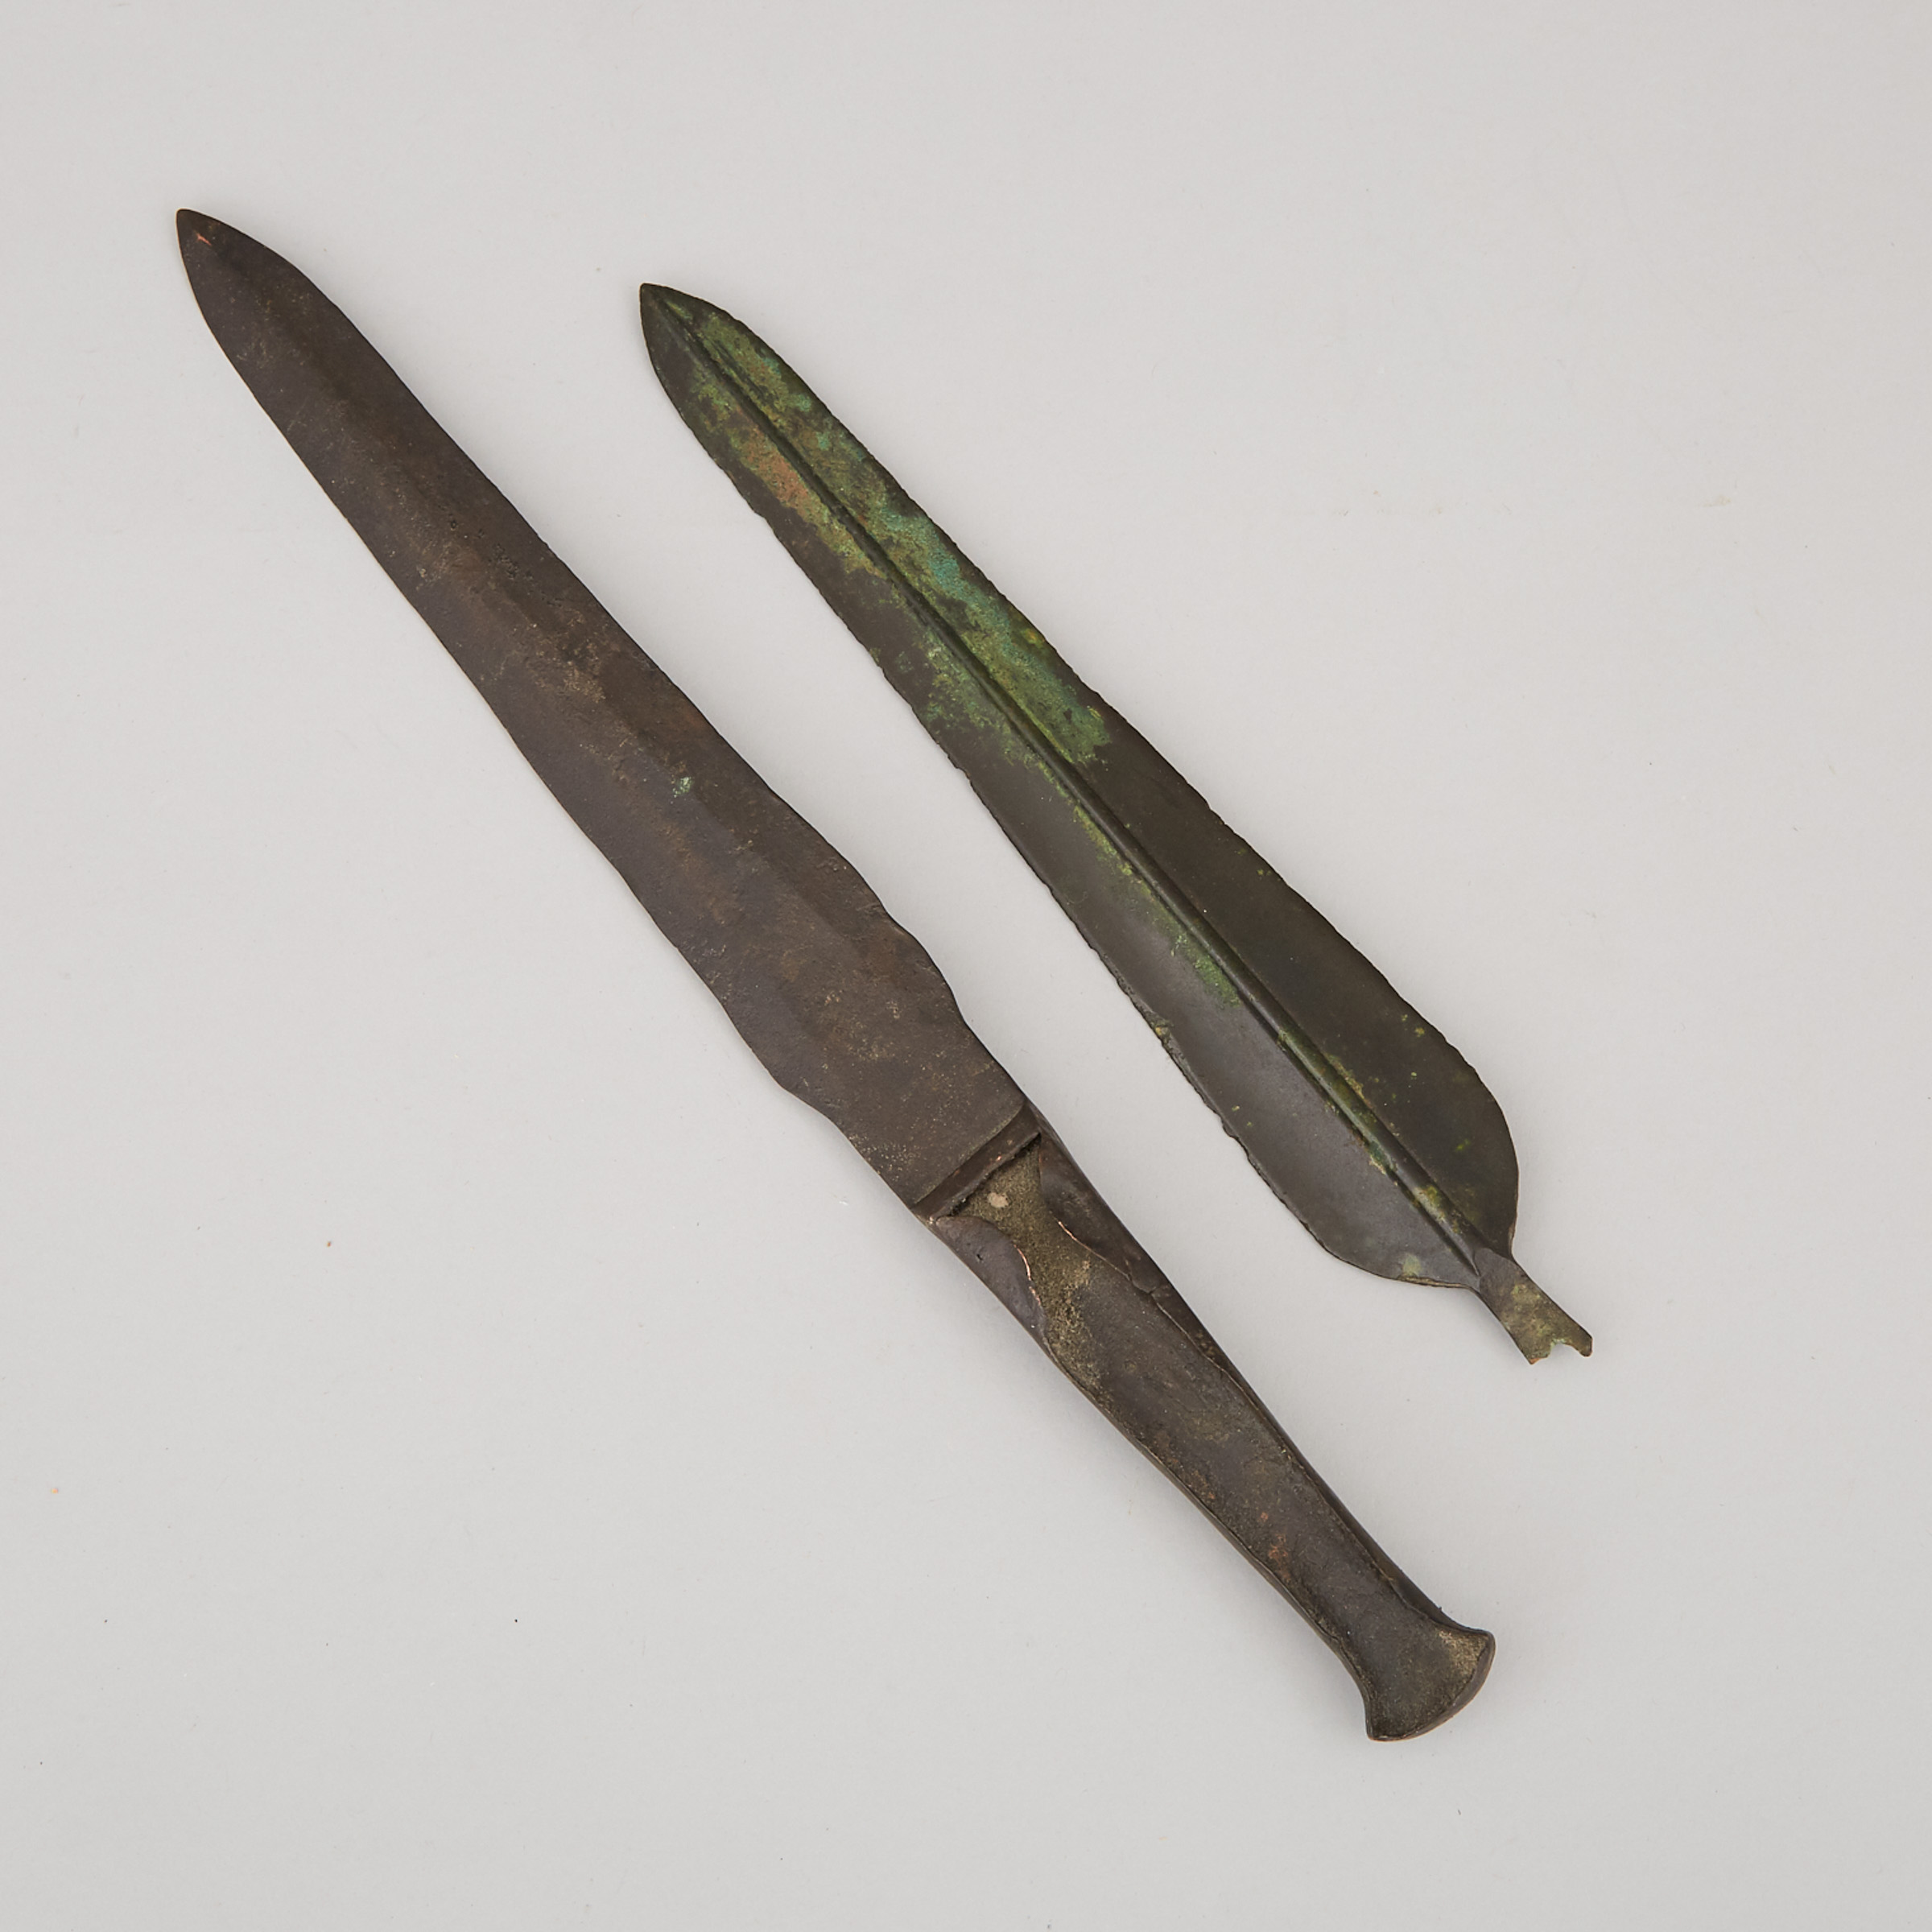 Two Luristan Bronze Daggers, Western Iran, 1200-1000 B.C.